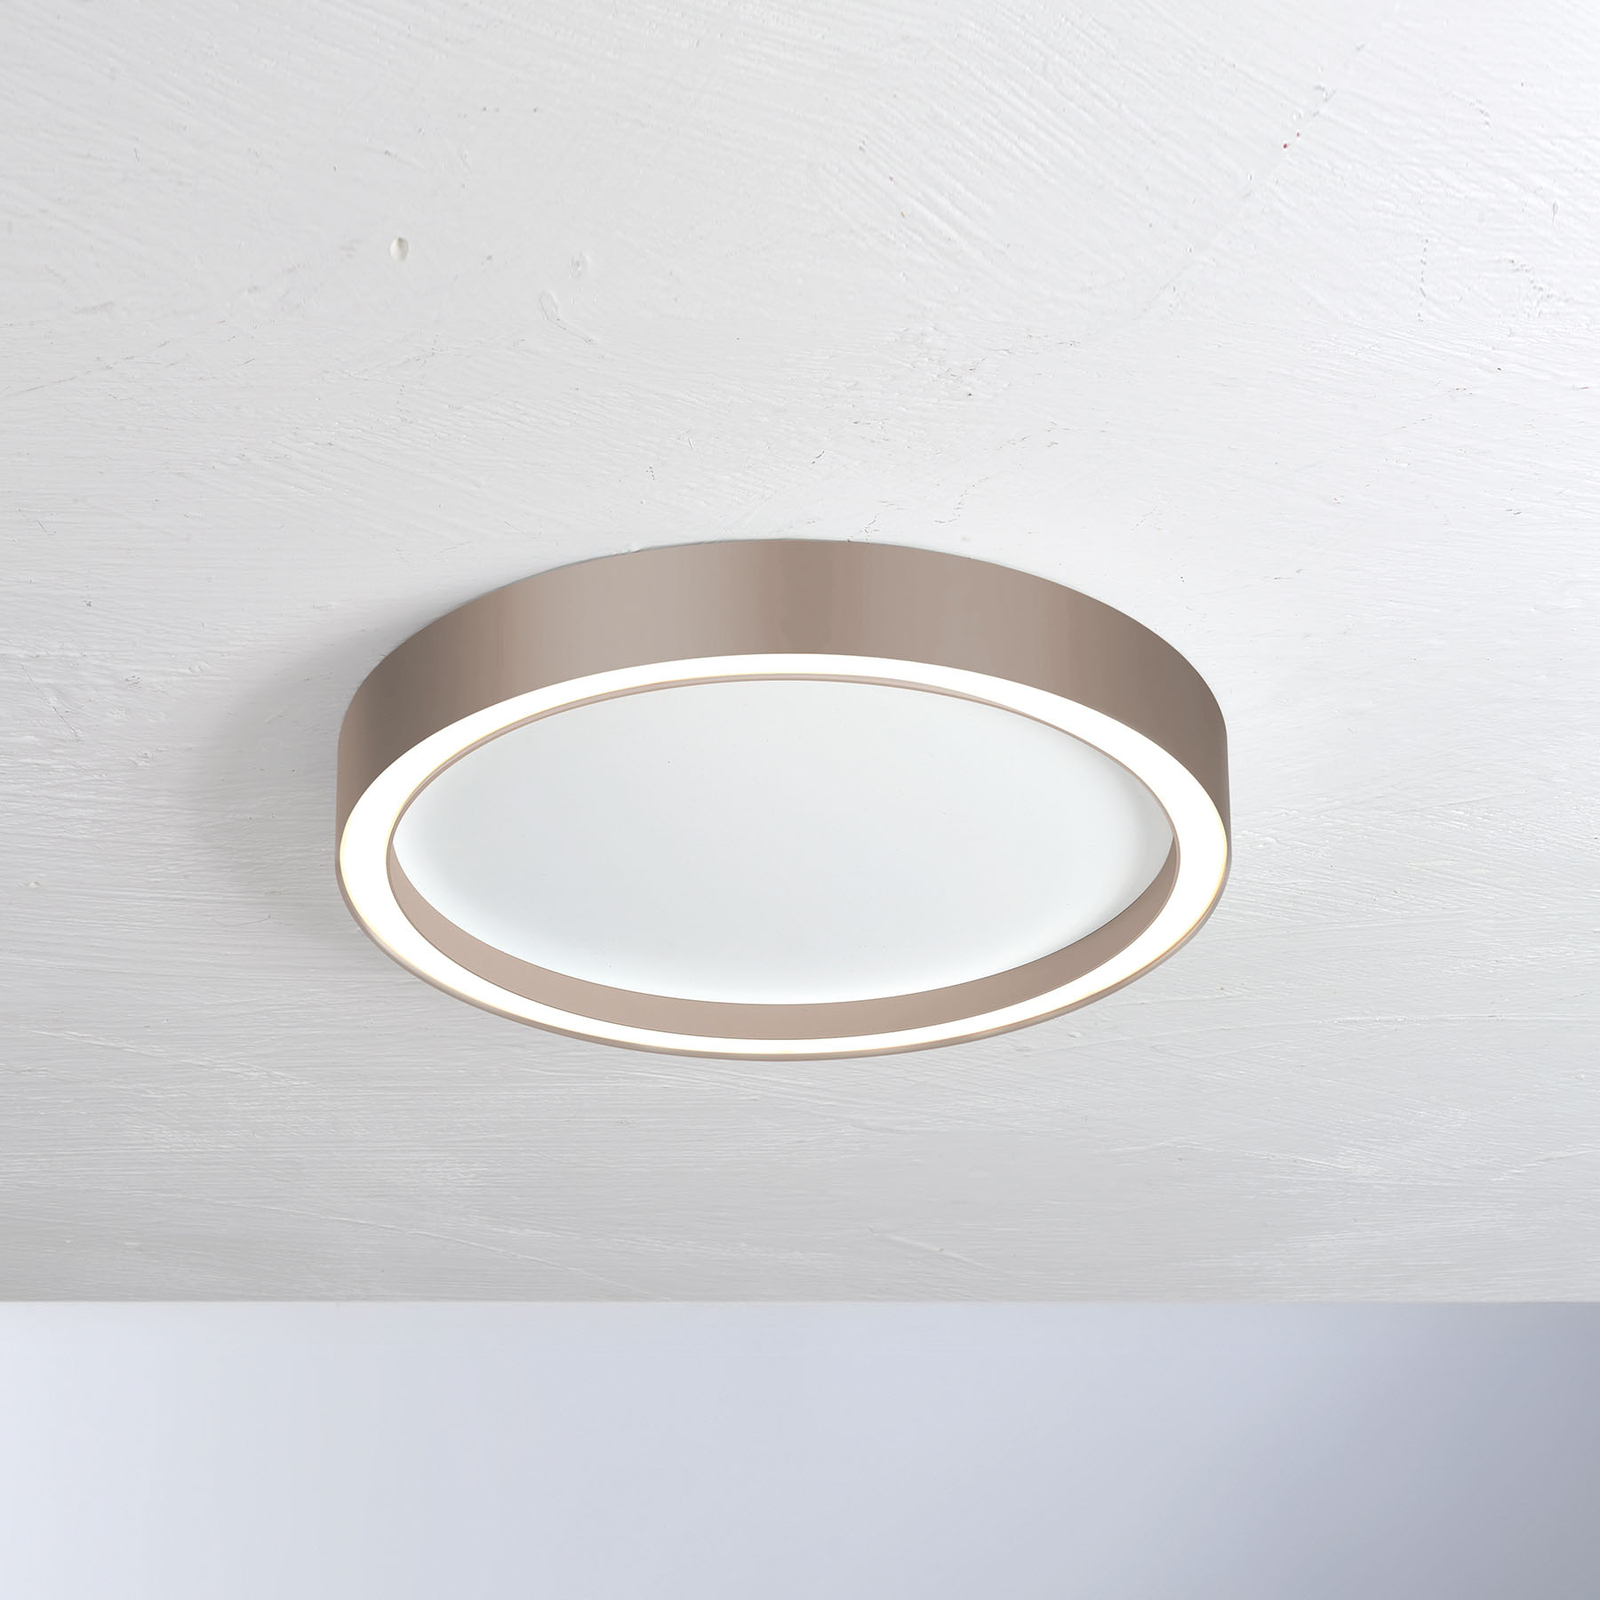 Bopp Aura LED ceiling light Ø 55cm white/taupe